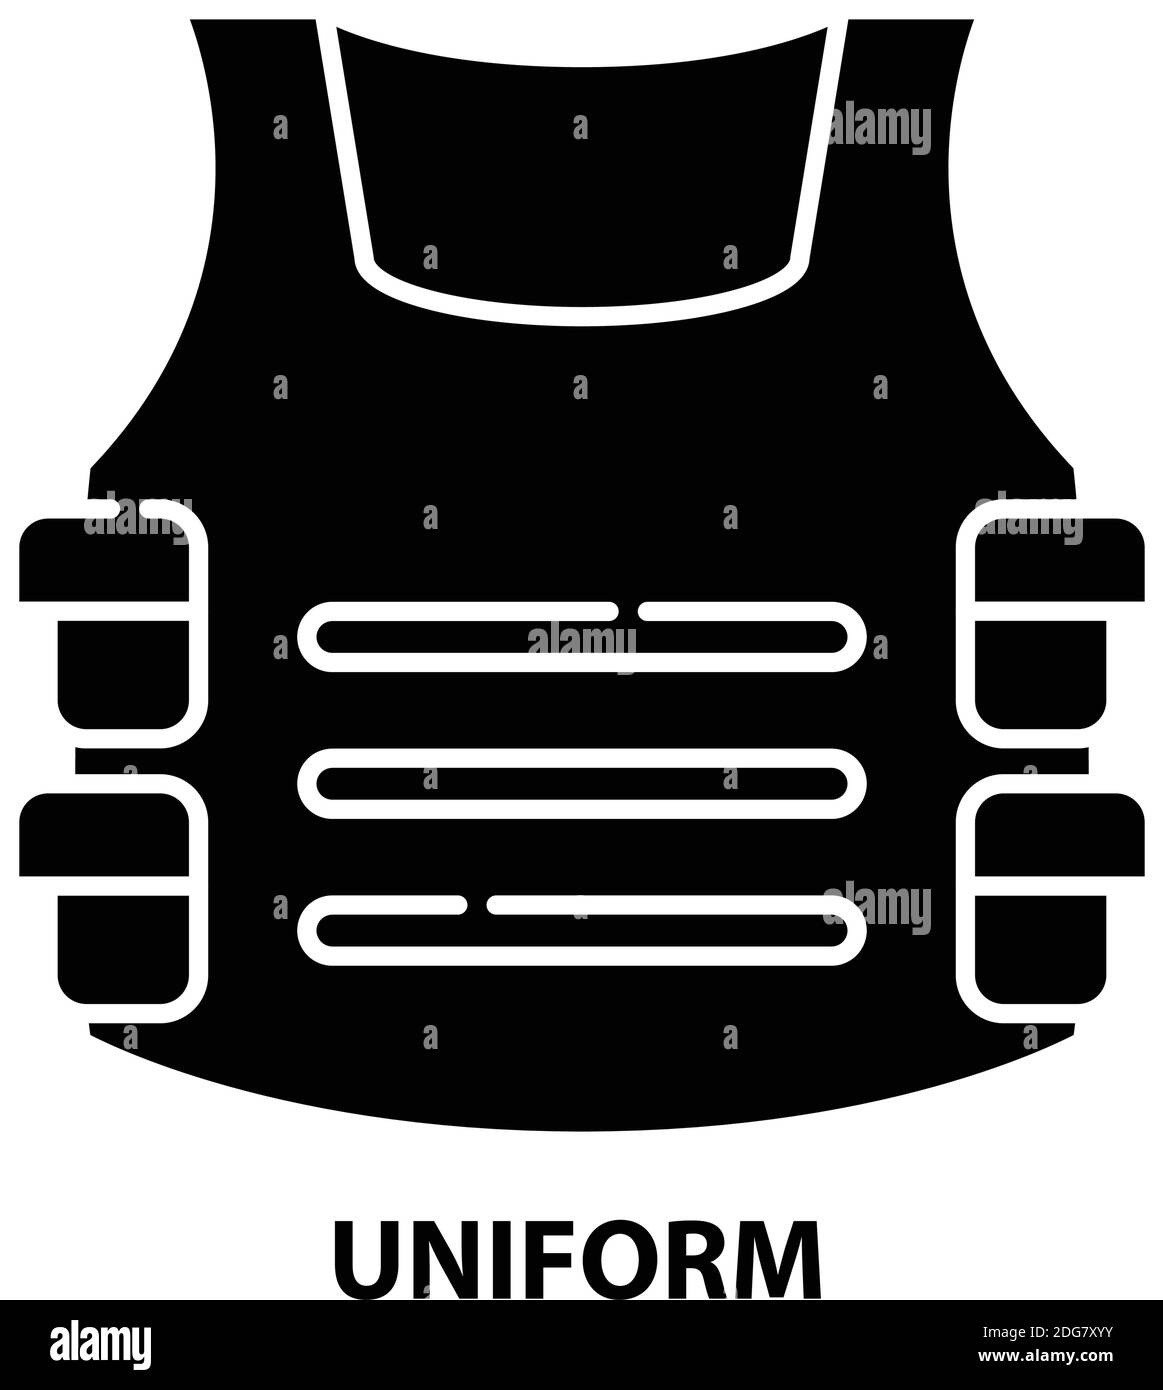 uniform symbol icon, black vector sign with editable strokes, concept ...